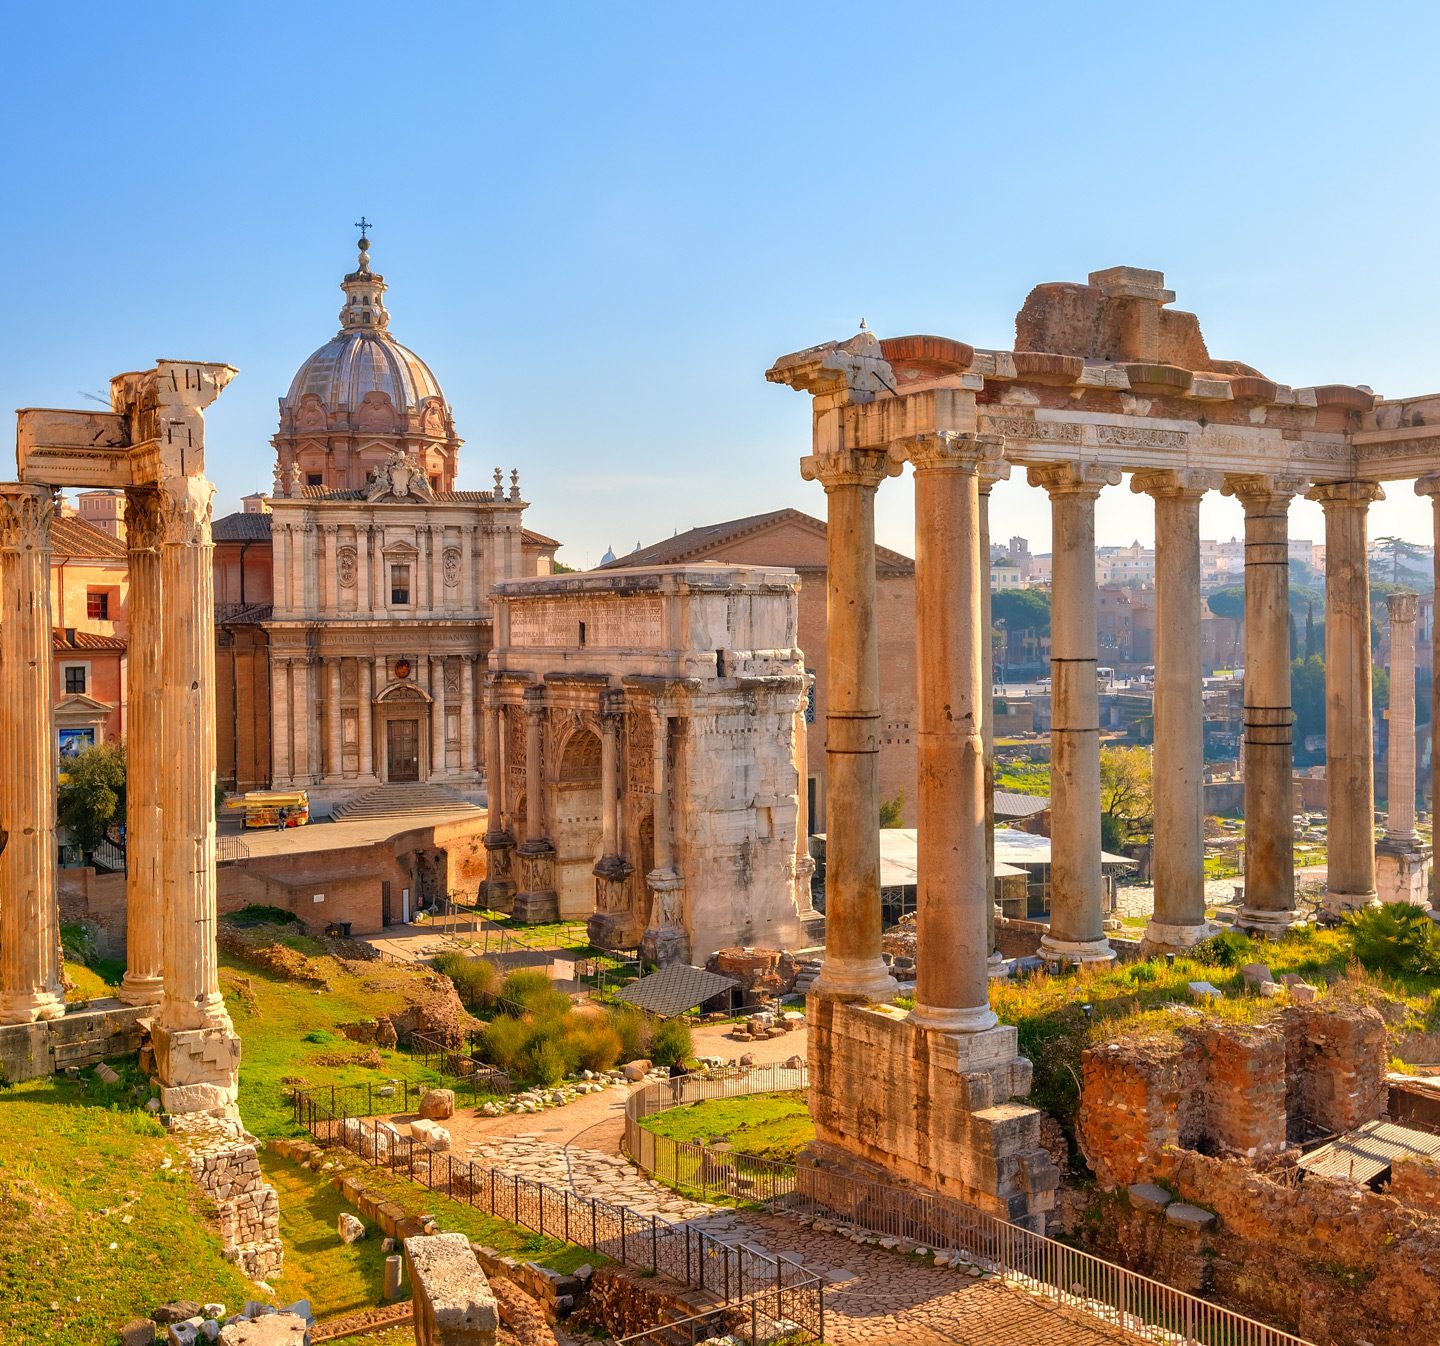 Roma antica